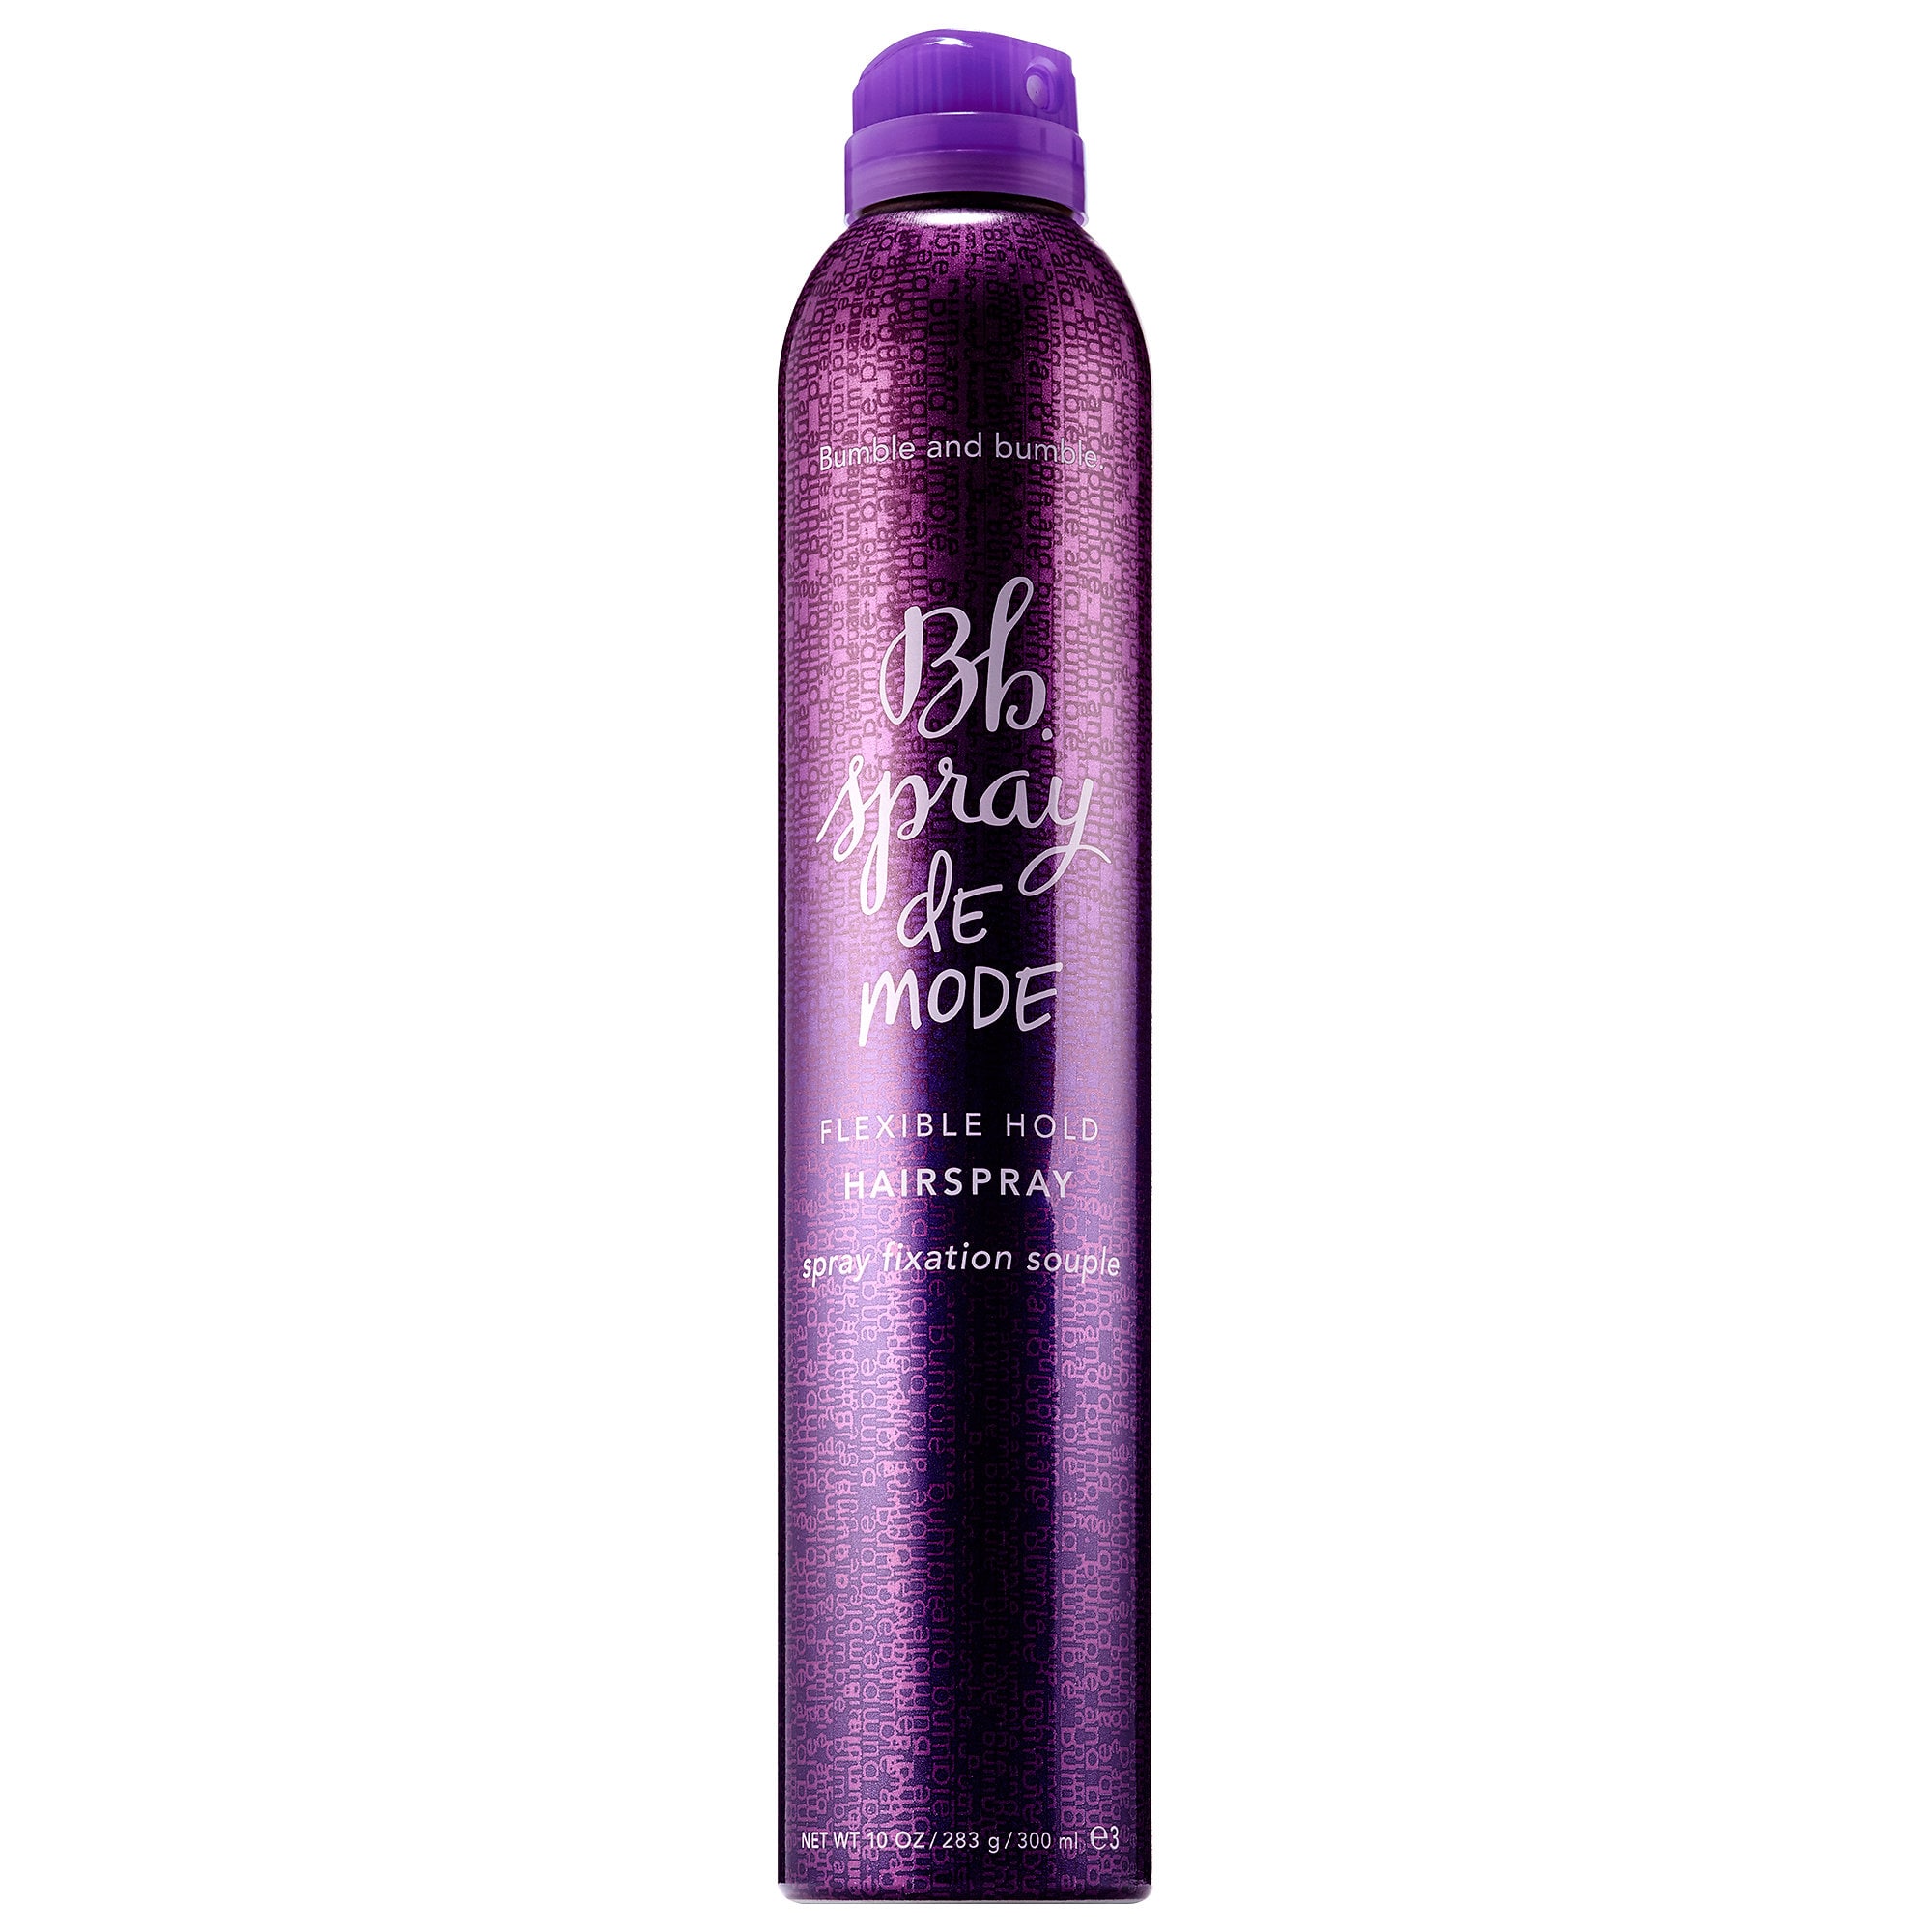 BUMBLE AND BUMBLE Spray de Mode Flexible Hold Hairspray.